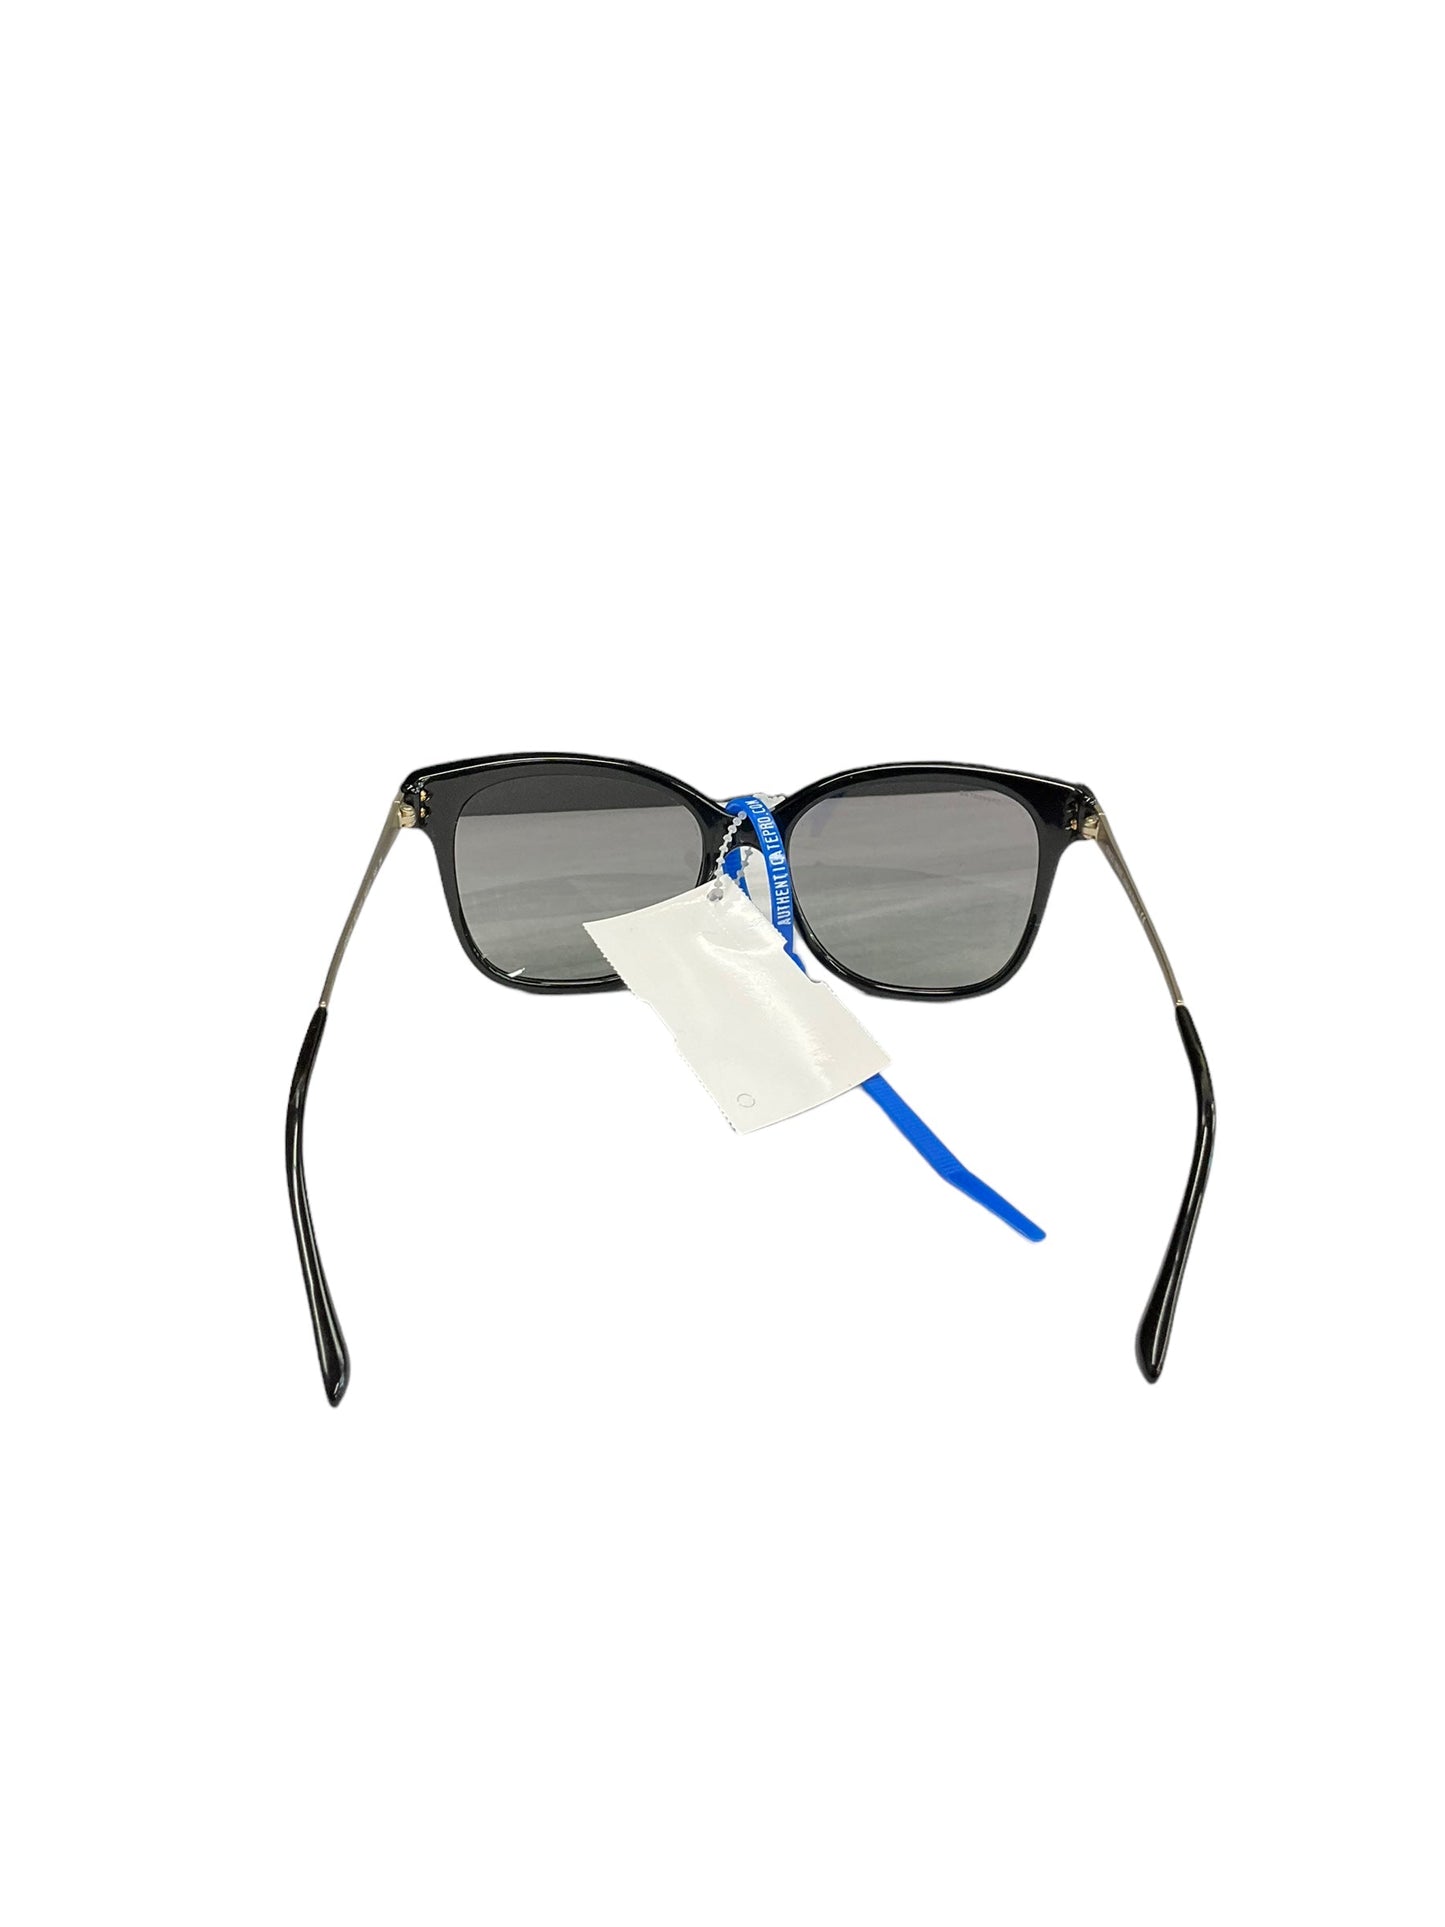 Sunglasses Designer Giorgio Armani